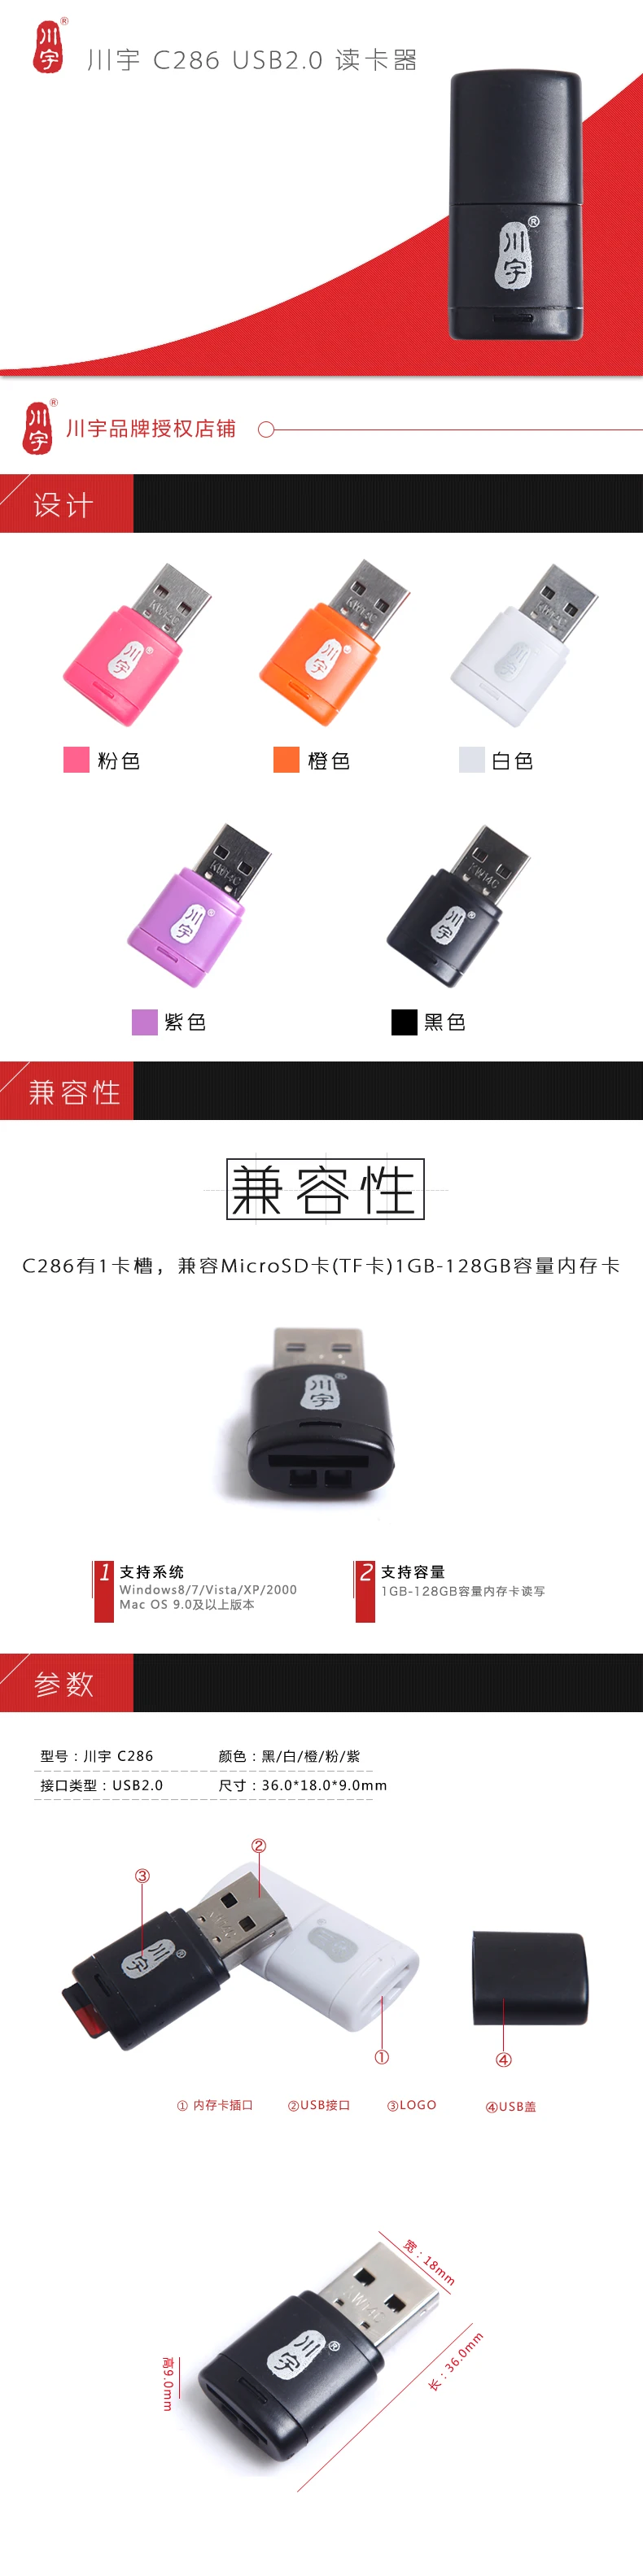 Картридер мобильного телефона памяти карты памяти Micro SD Card Reader